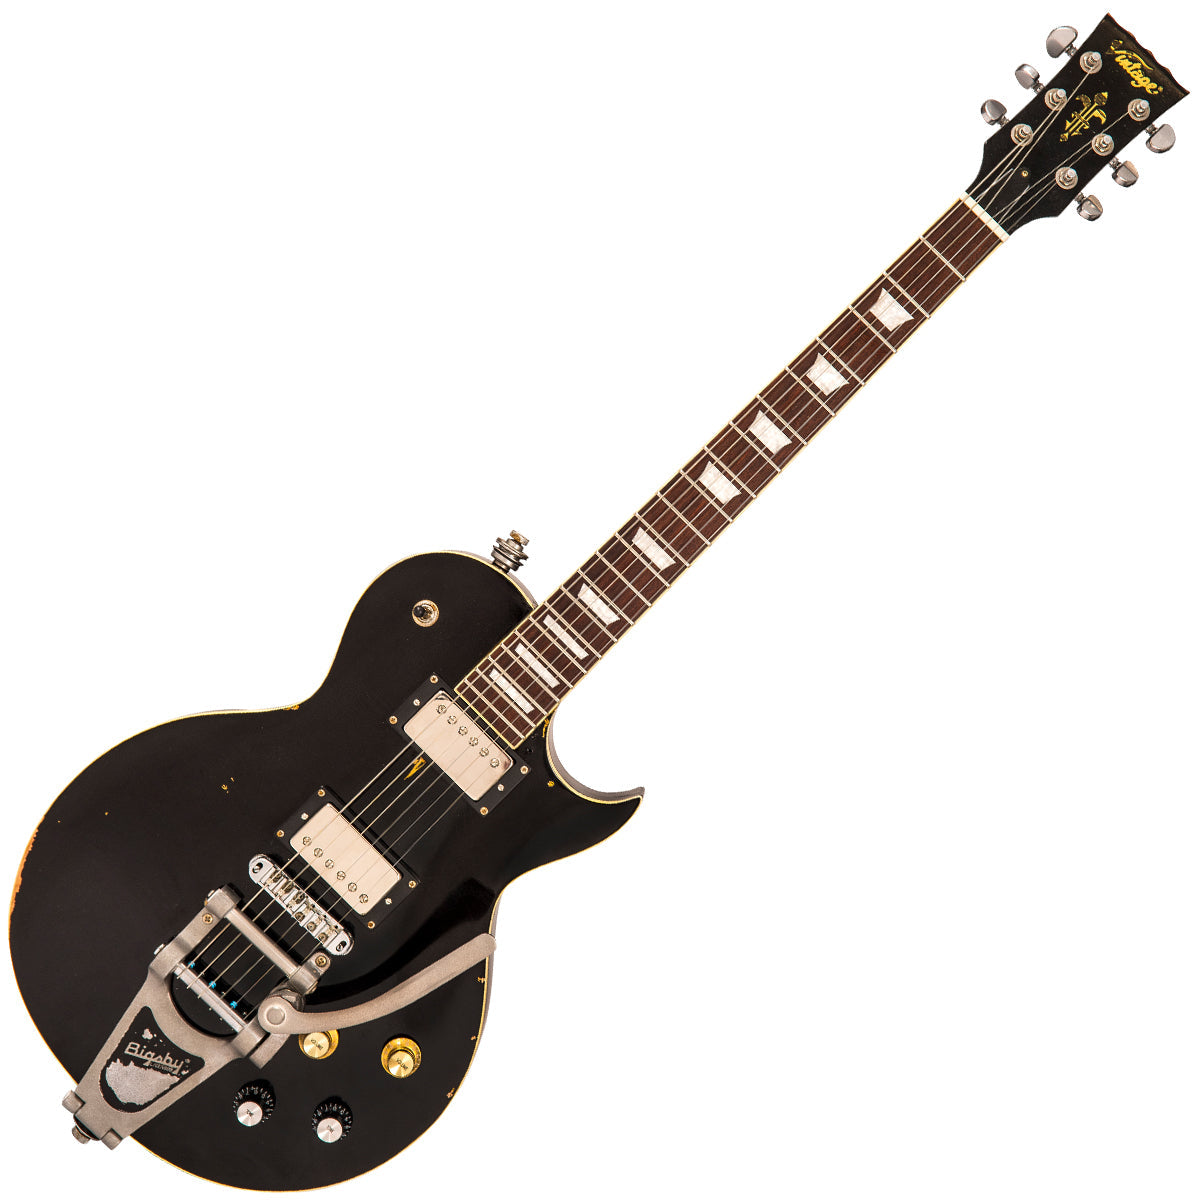 SOLD - Vintage V100 ProShop Unique ~ Vintage Black, Electric Guitars for sale at Richards Guitars.